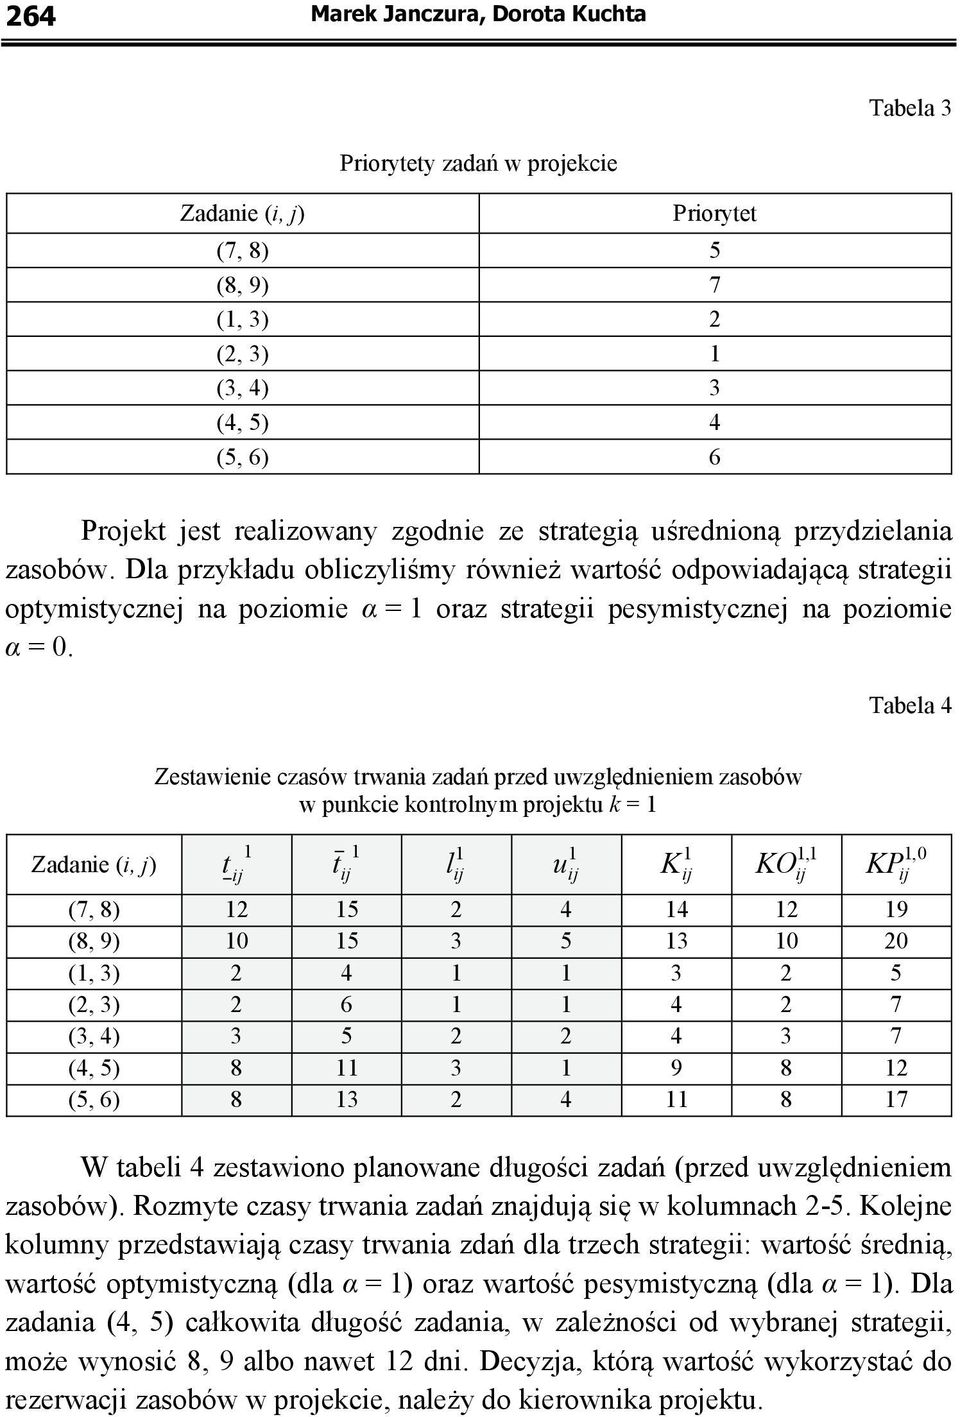 Tabela 4 Zadanie (i, j) Zestawienie czasów trwania zadań przed uwzględnieniem zasobów w punkcie kontrolnym projektu k = 1 1 t ij 1 t ij 1 l ij 1 1 u ij K ij 1,1 KO ij 1,0 KP ij (7, 8) 12 15 2 4 14 12